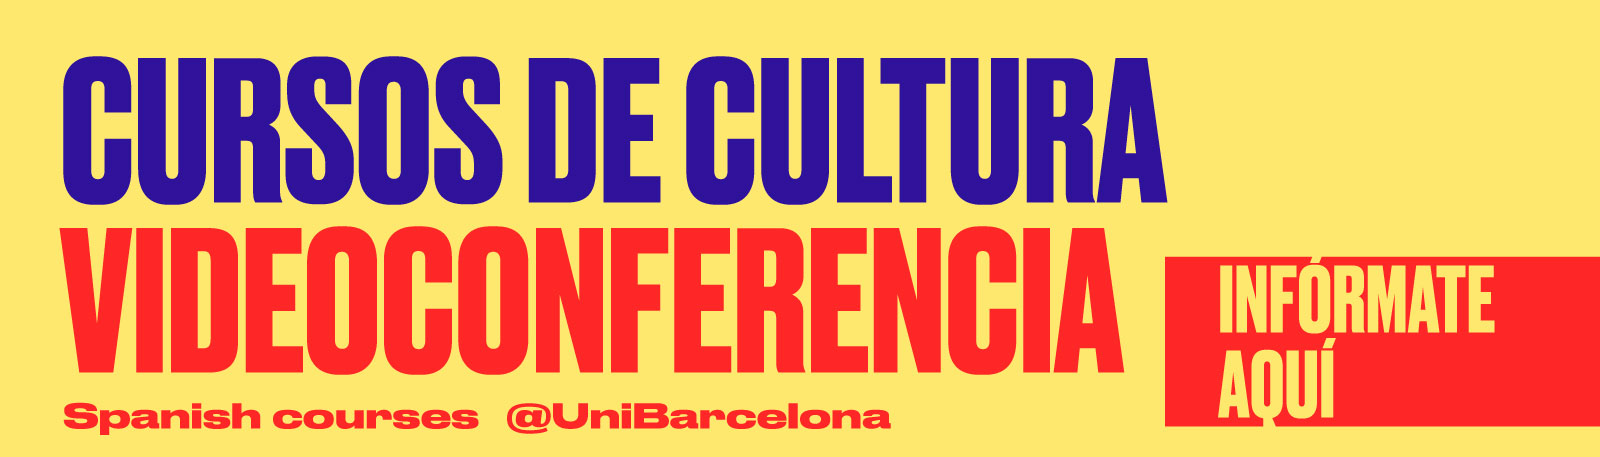 SPANIFY - Cursos de cultura videoconferencia